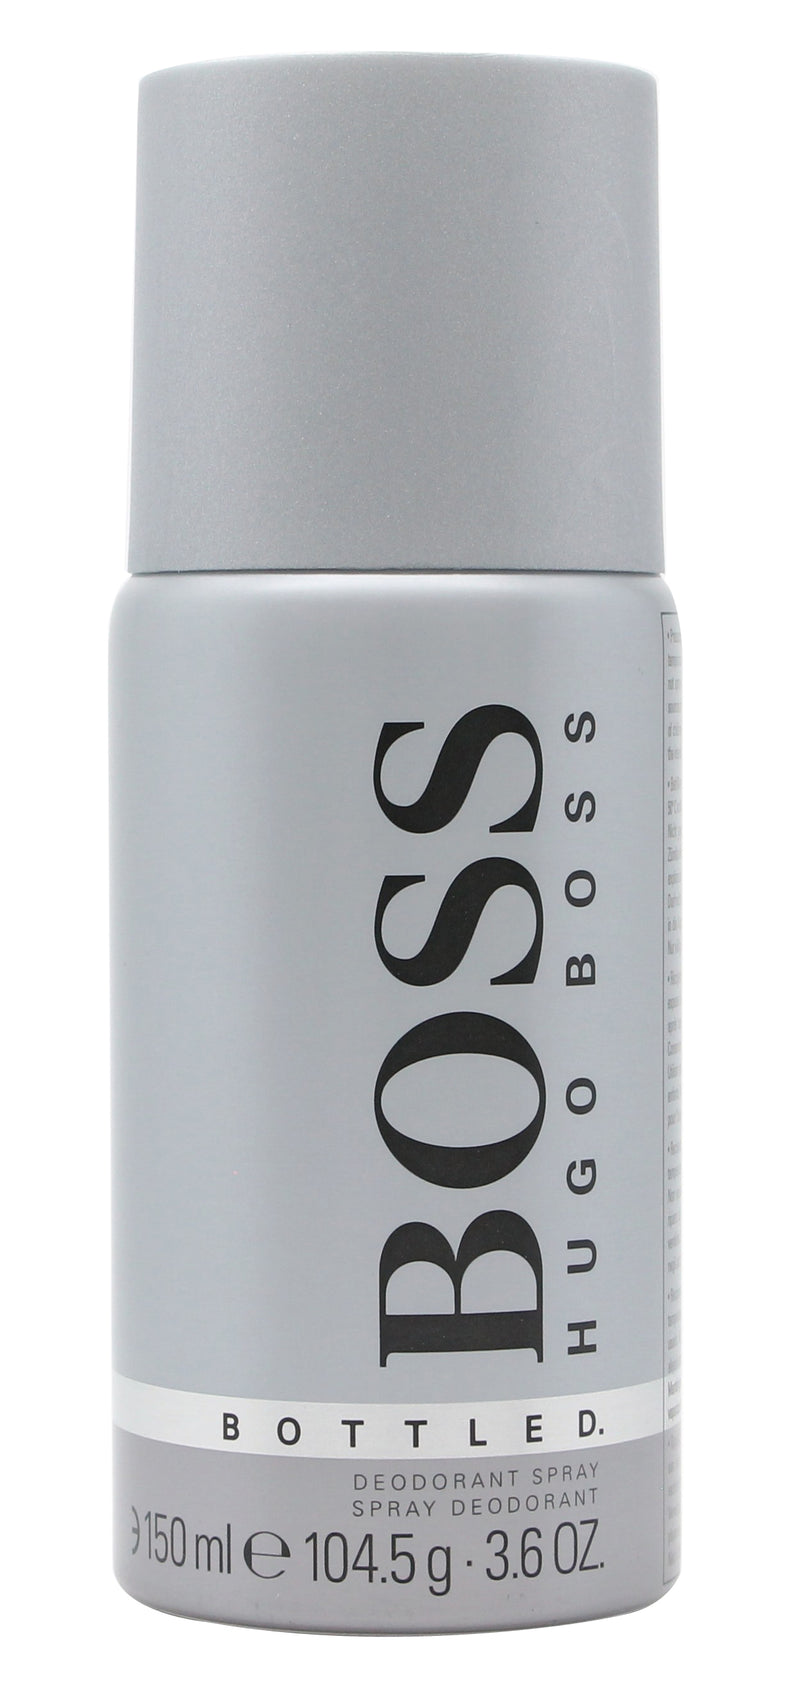 Hugo Boss Boss Bottled Deodorantsprej 150ml